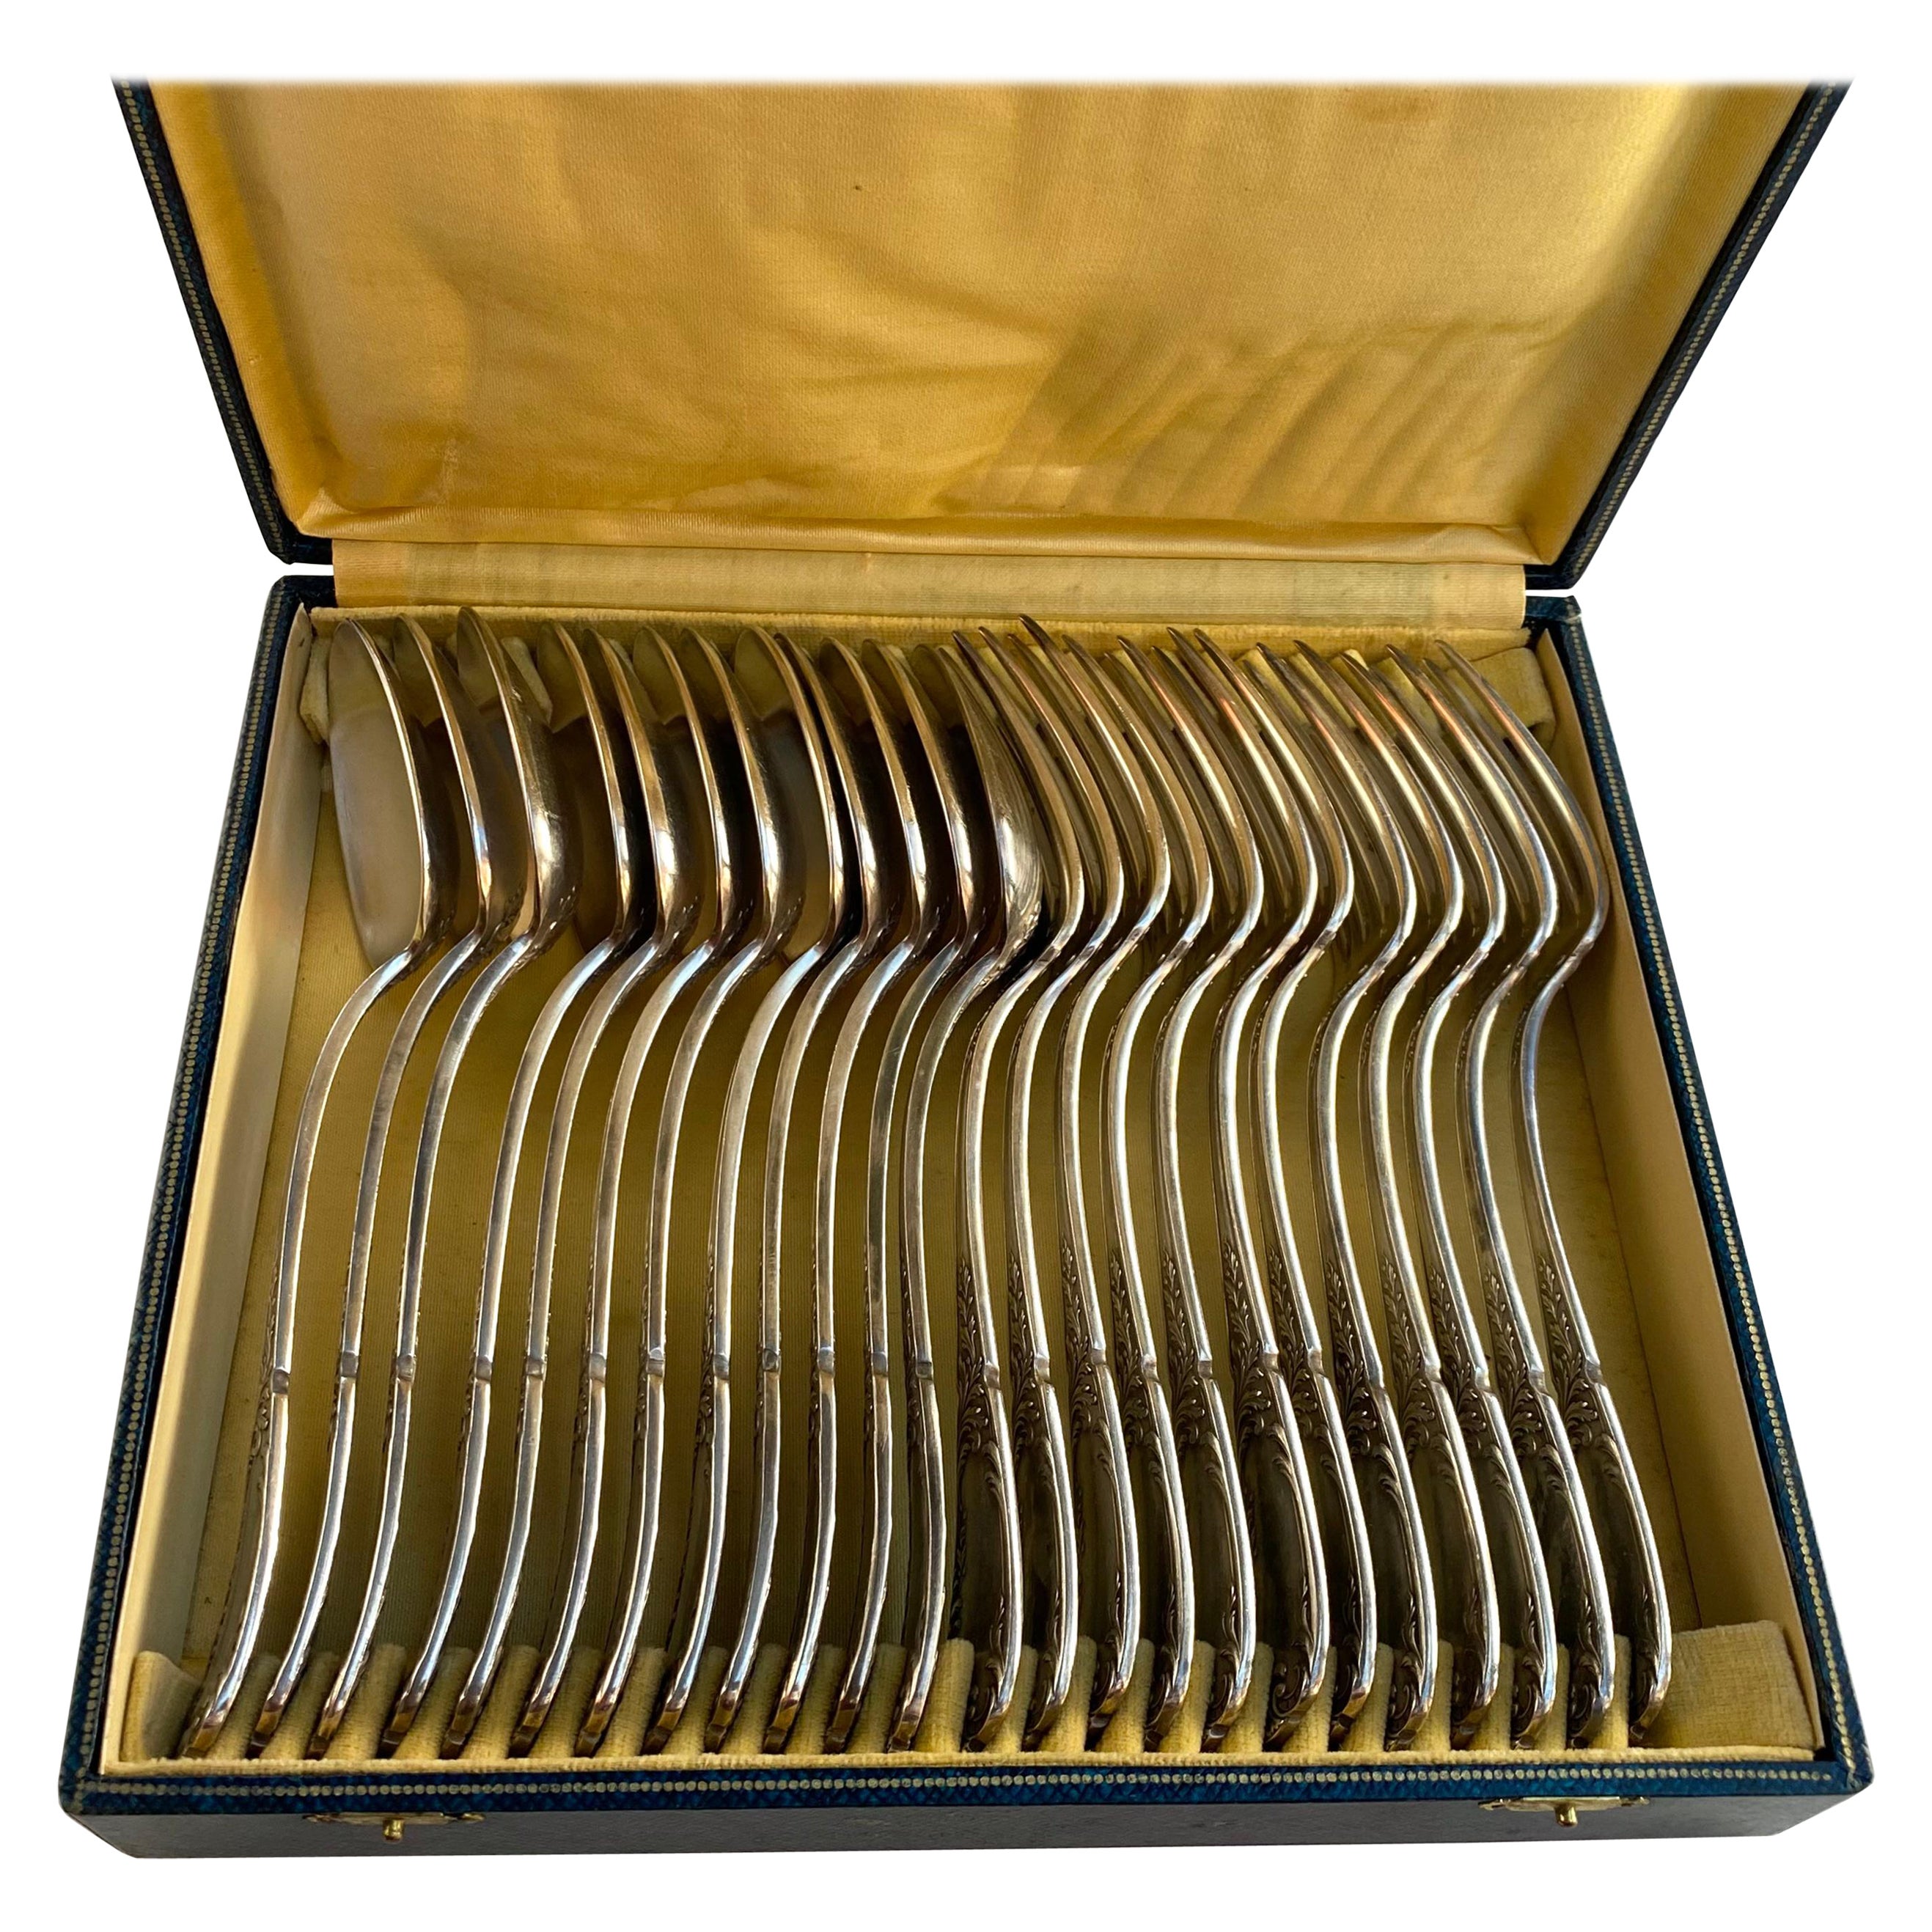 Vintage Silver Plate Utensils 12 Spoons 12 Forks France 1950s